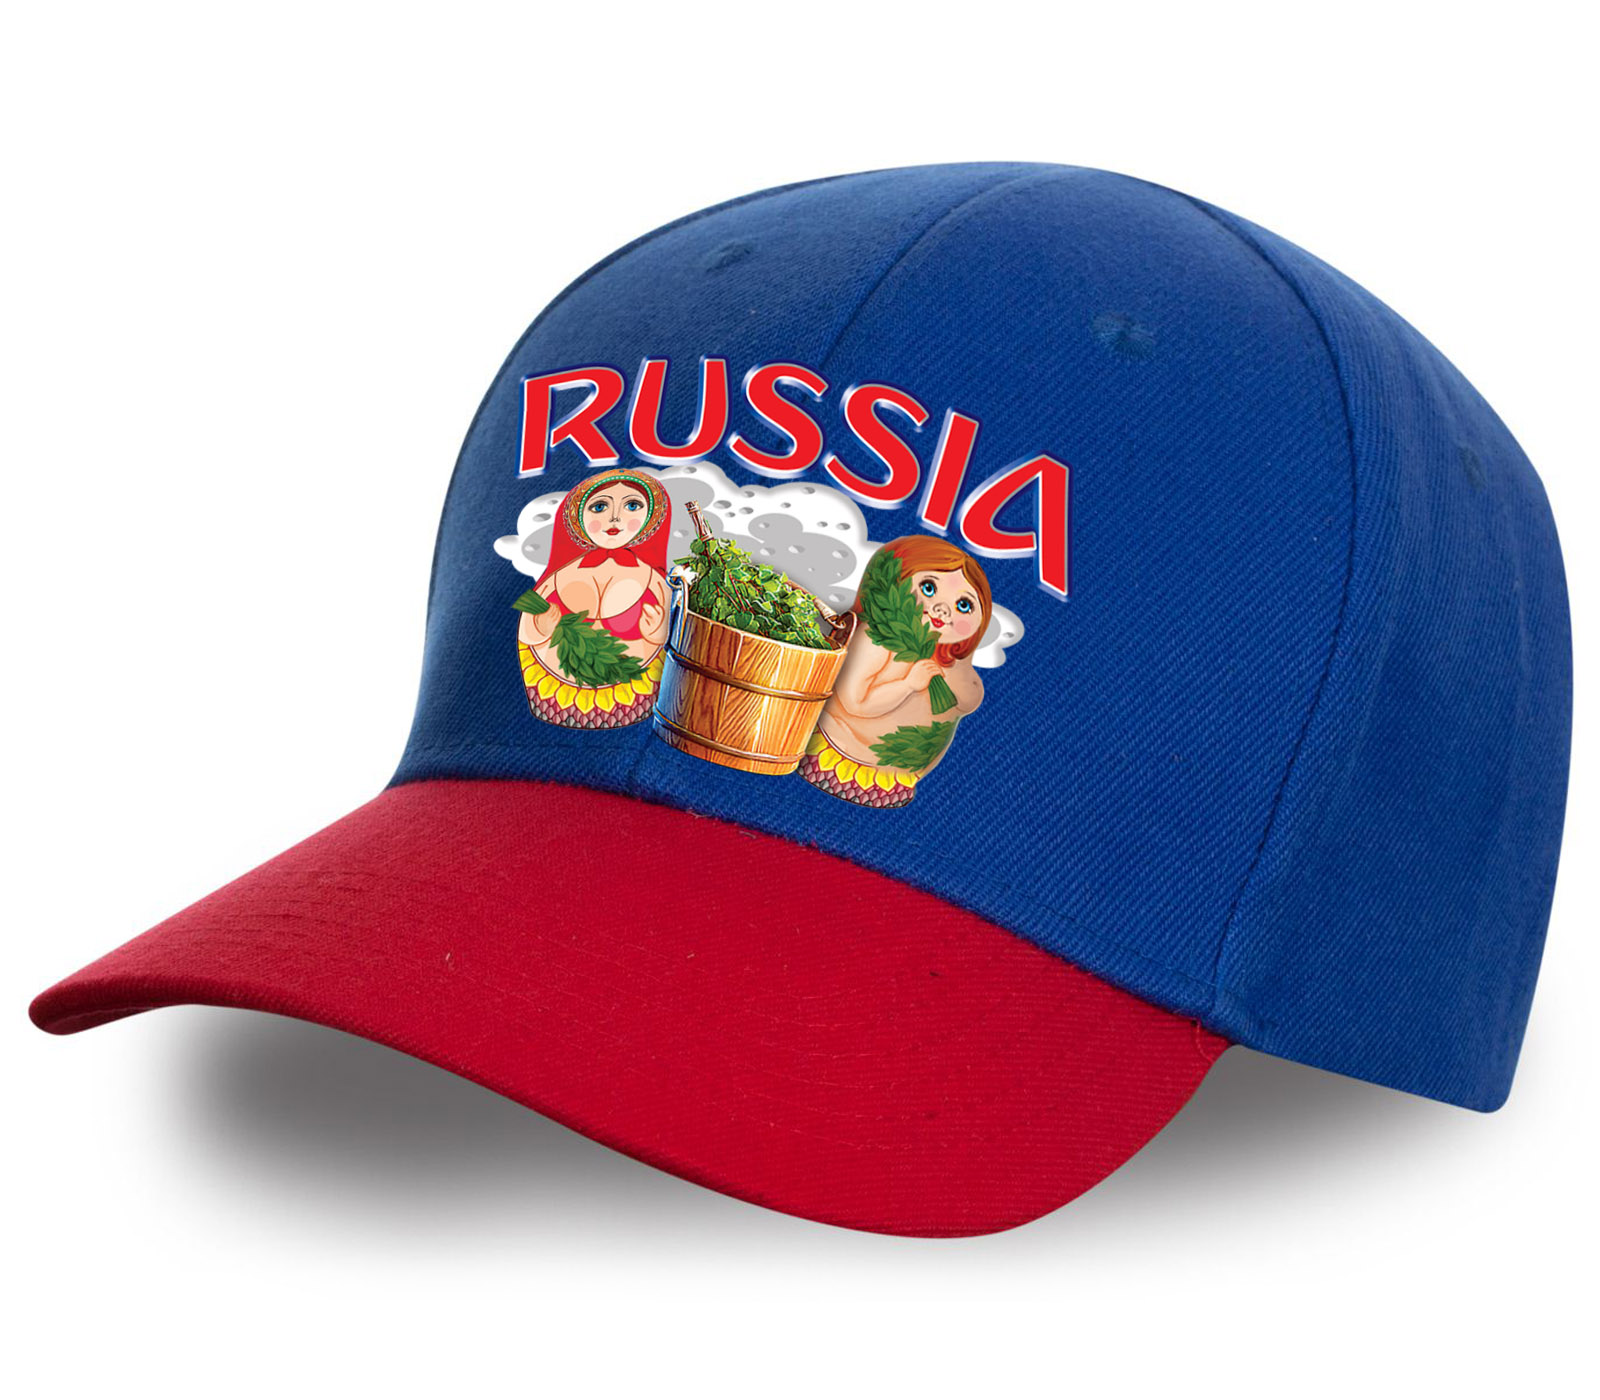 Заказать бейсболки Russia онлайн недорого с доставкой